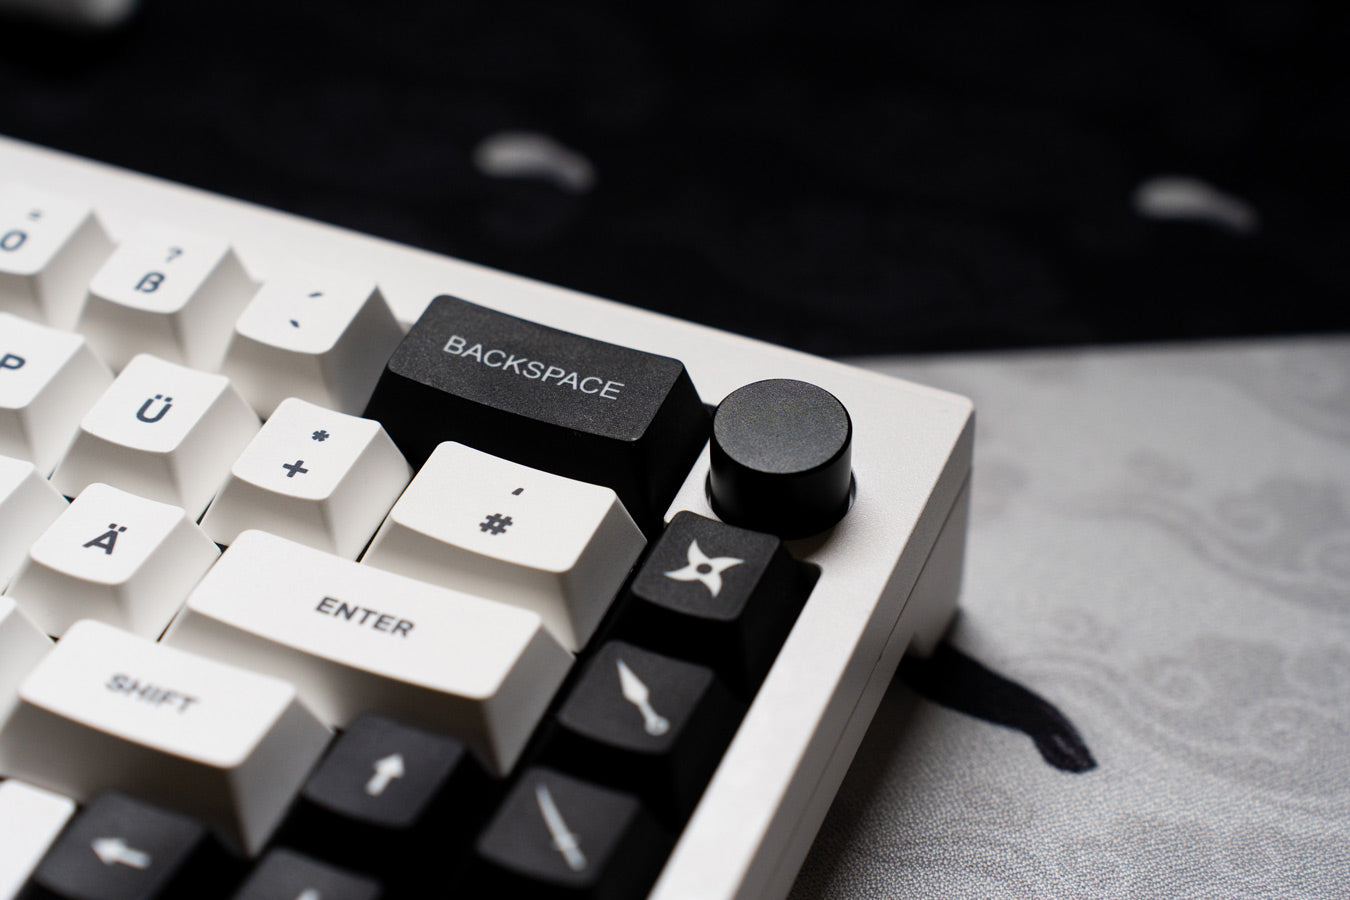 Ikigai keyboard close up knob view